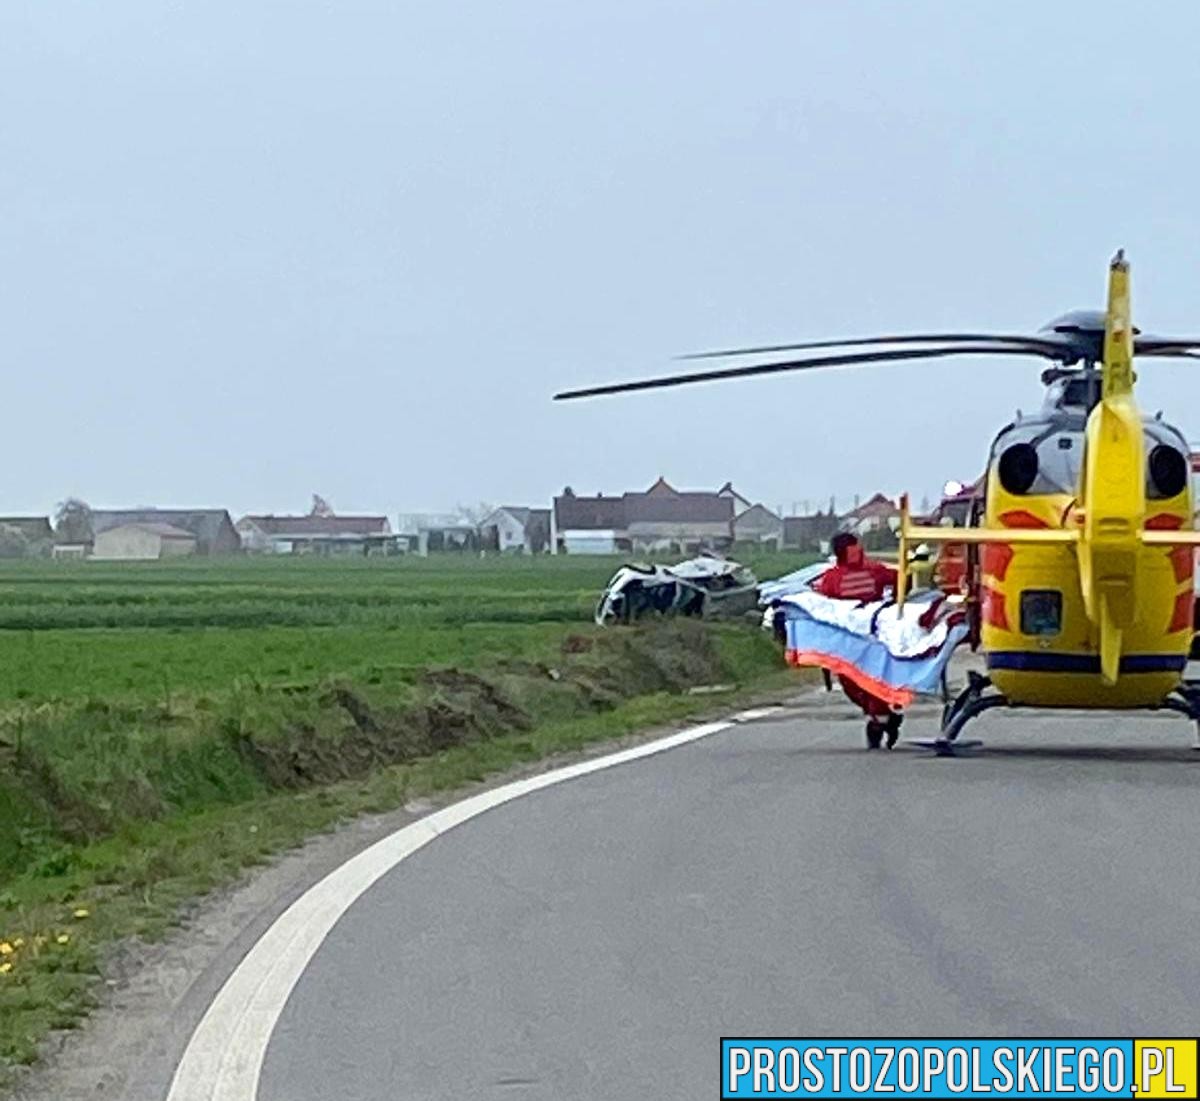 Dachowanie BMW w Ligocie Bialskiej koło Prudnika. Dwie osoby zabrane do szpitala. Na miejscu lądował LPR.(Zdjecia&Wideo)